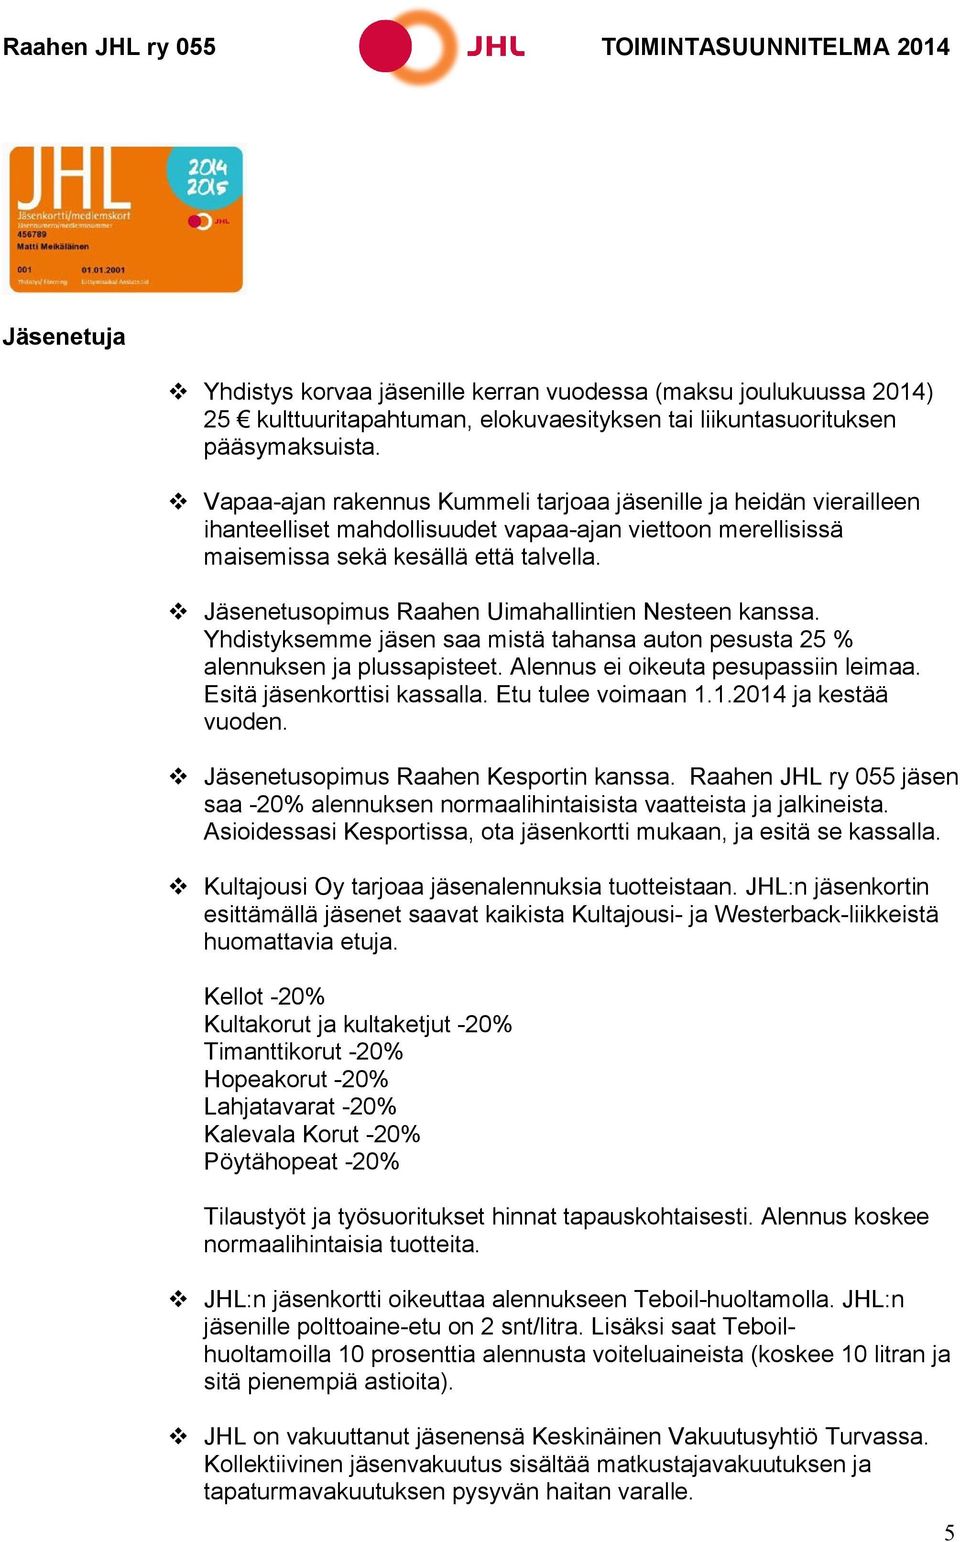 Jäsenetusopimus Raahen Uimahallintien Nesteen kanssa. Yhdistyksemme jäsen saa mistä tahansa auton pesusta 25 % alennuksen ja plussapisteet. Alennus ei oikeuta pesupassiin leimaa.